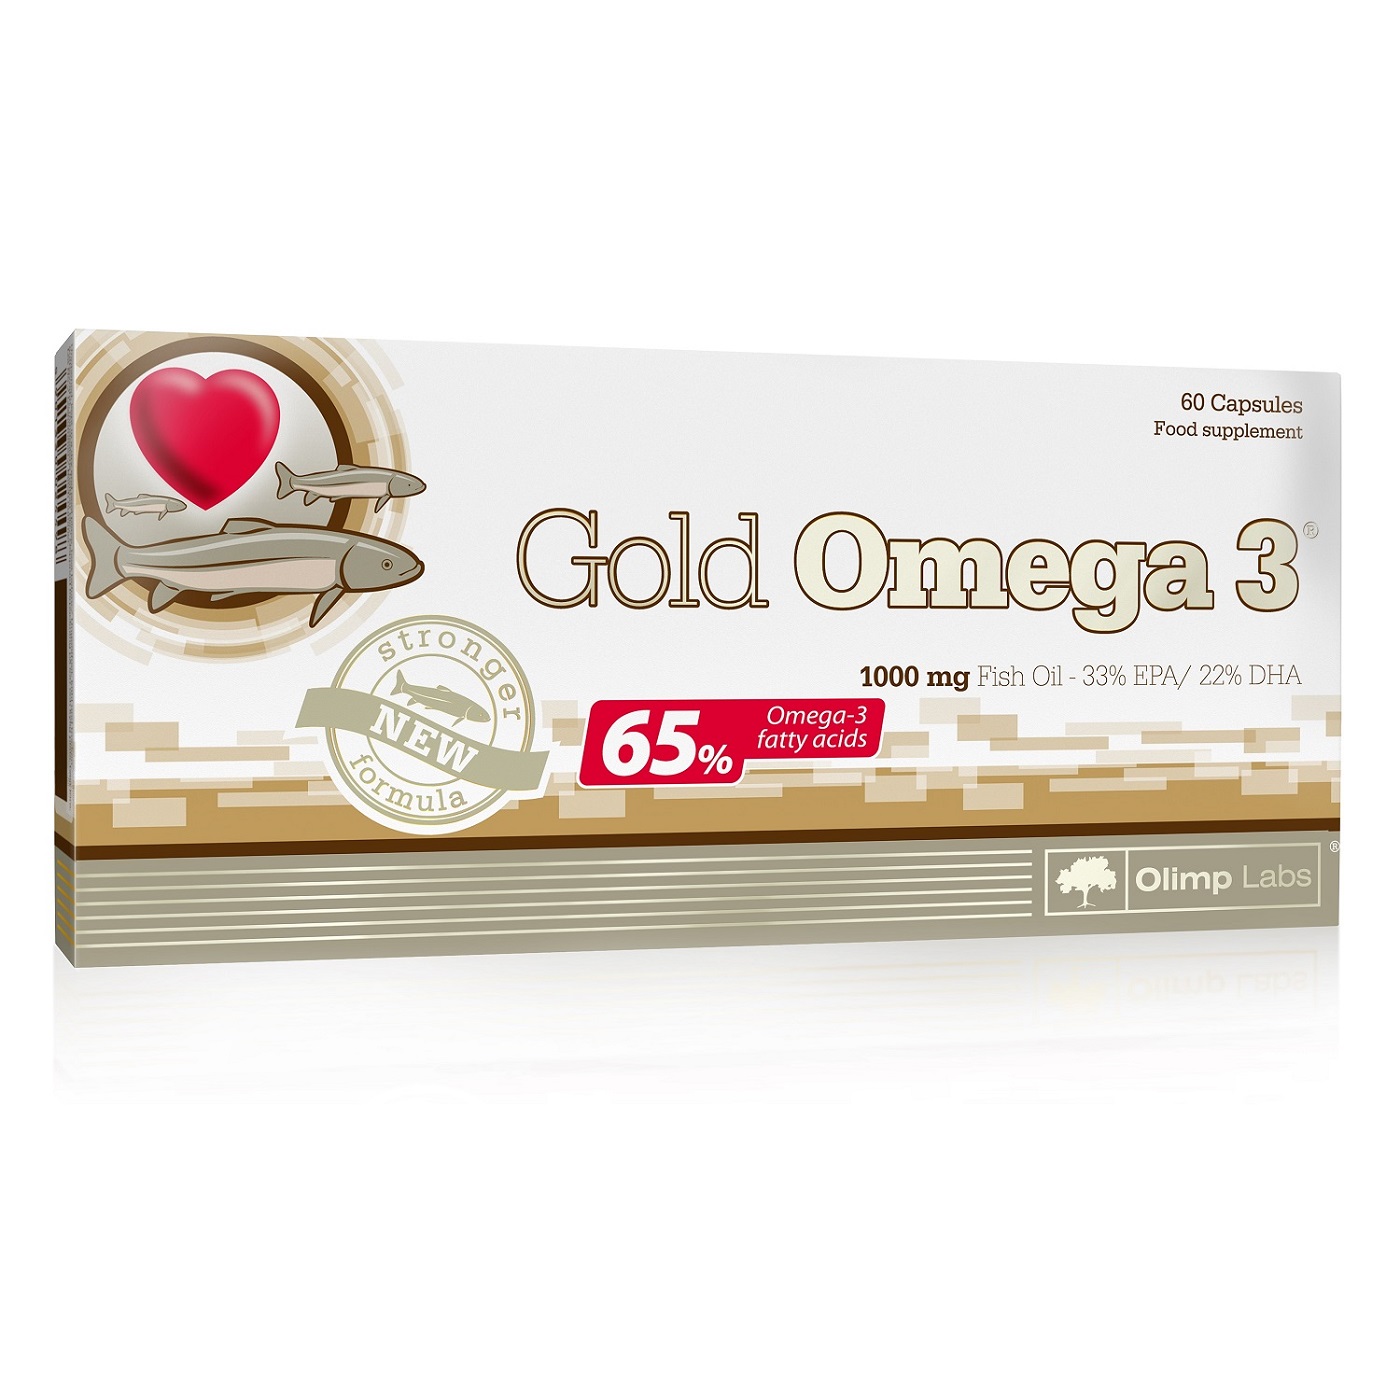 Olimp Labs Gold Omega 3 биологически активная добавка к пище